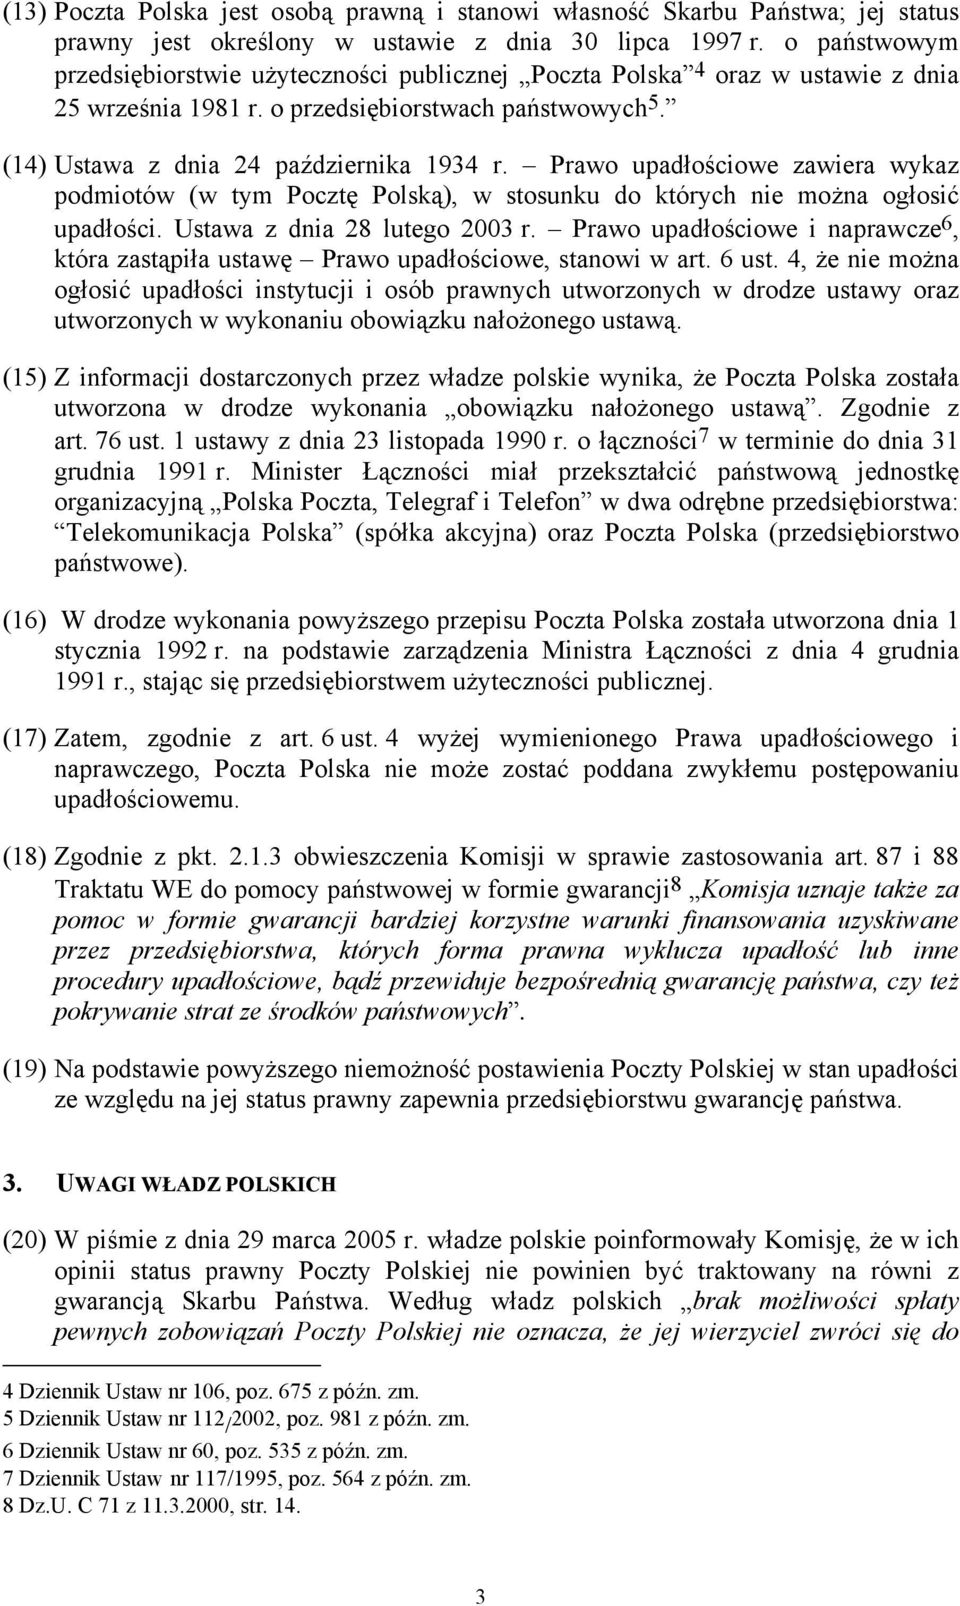 Prawo upadłościowe zawiera wykaz podmiotów (w tym Pocztę Polską), w stosunku do których nie można ogłosić upadłości. Ustawa z dnia 28 lutego 2003 r.